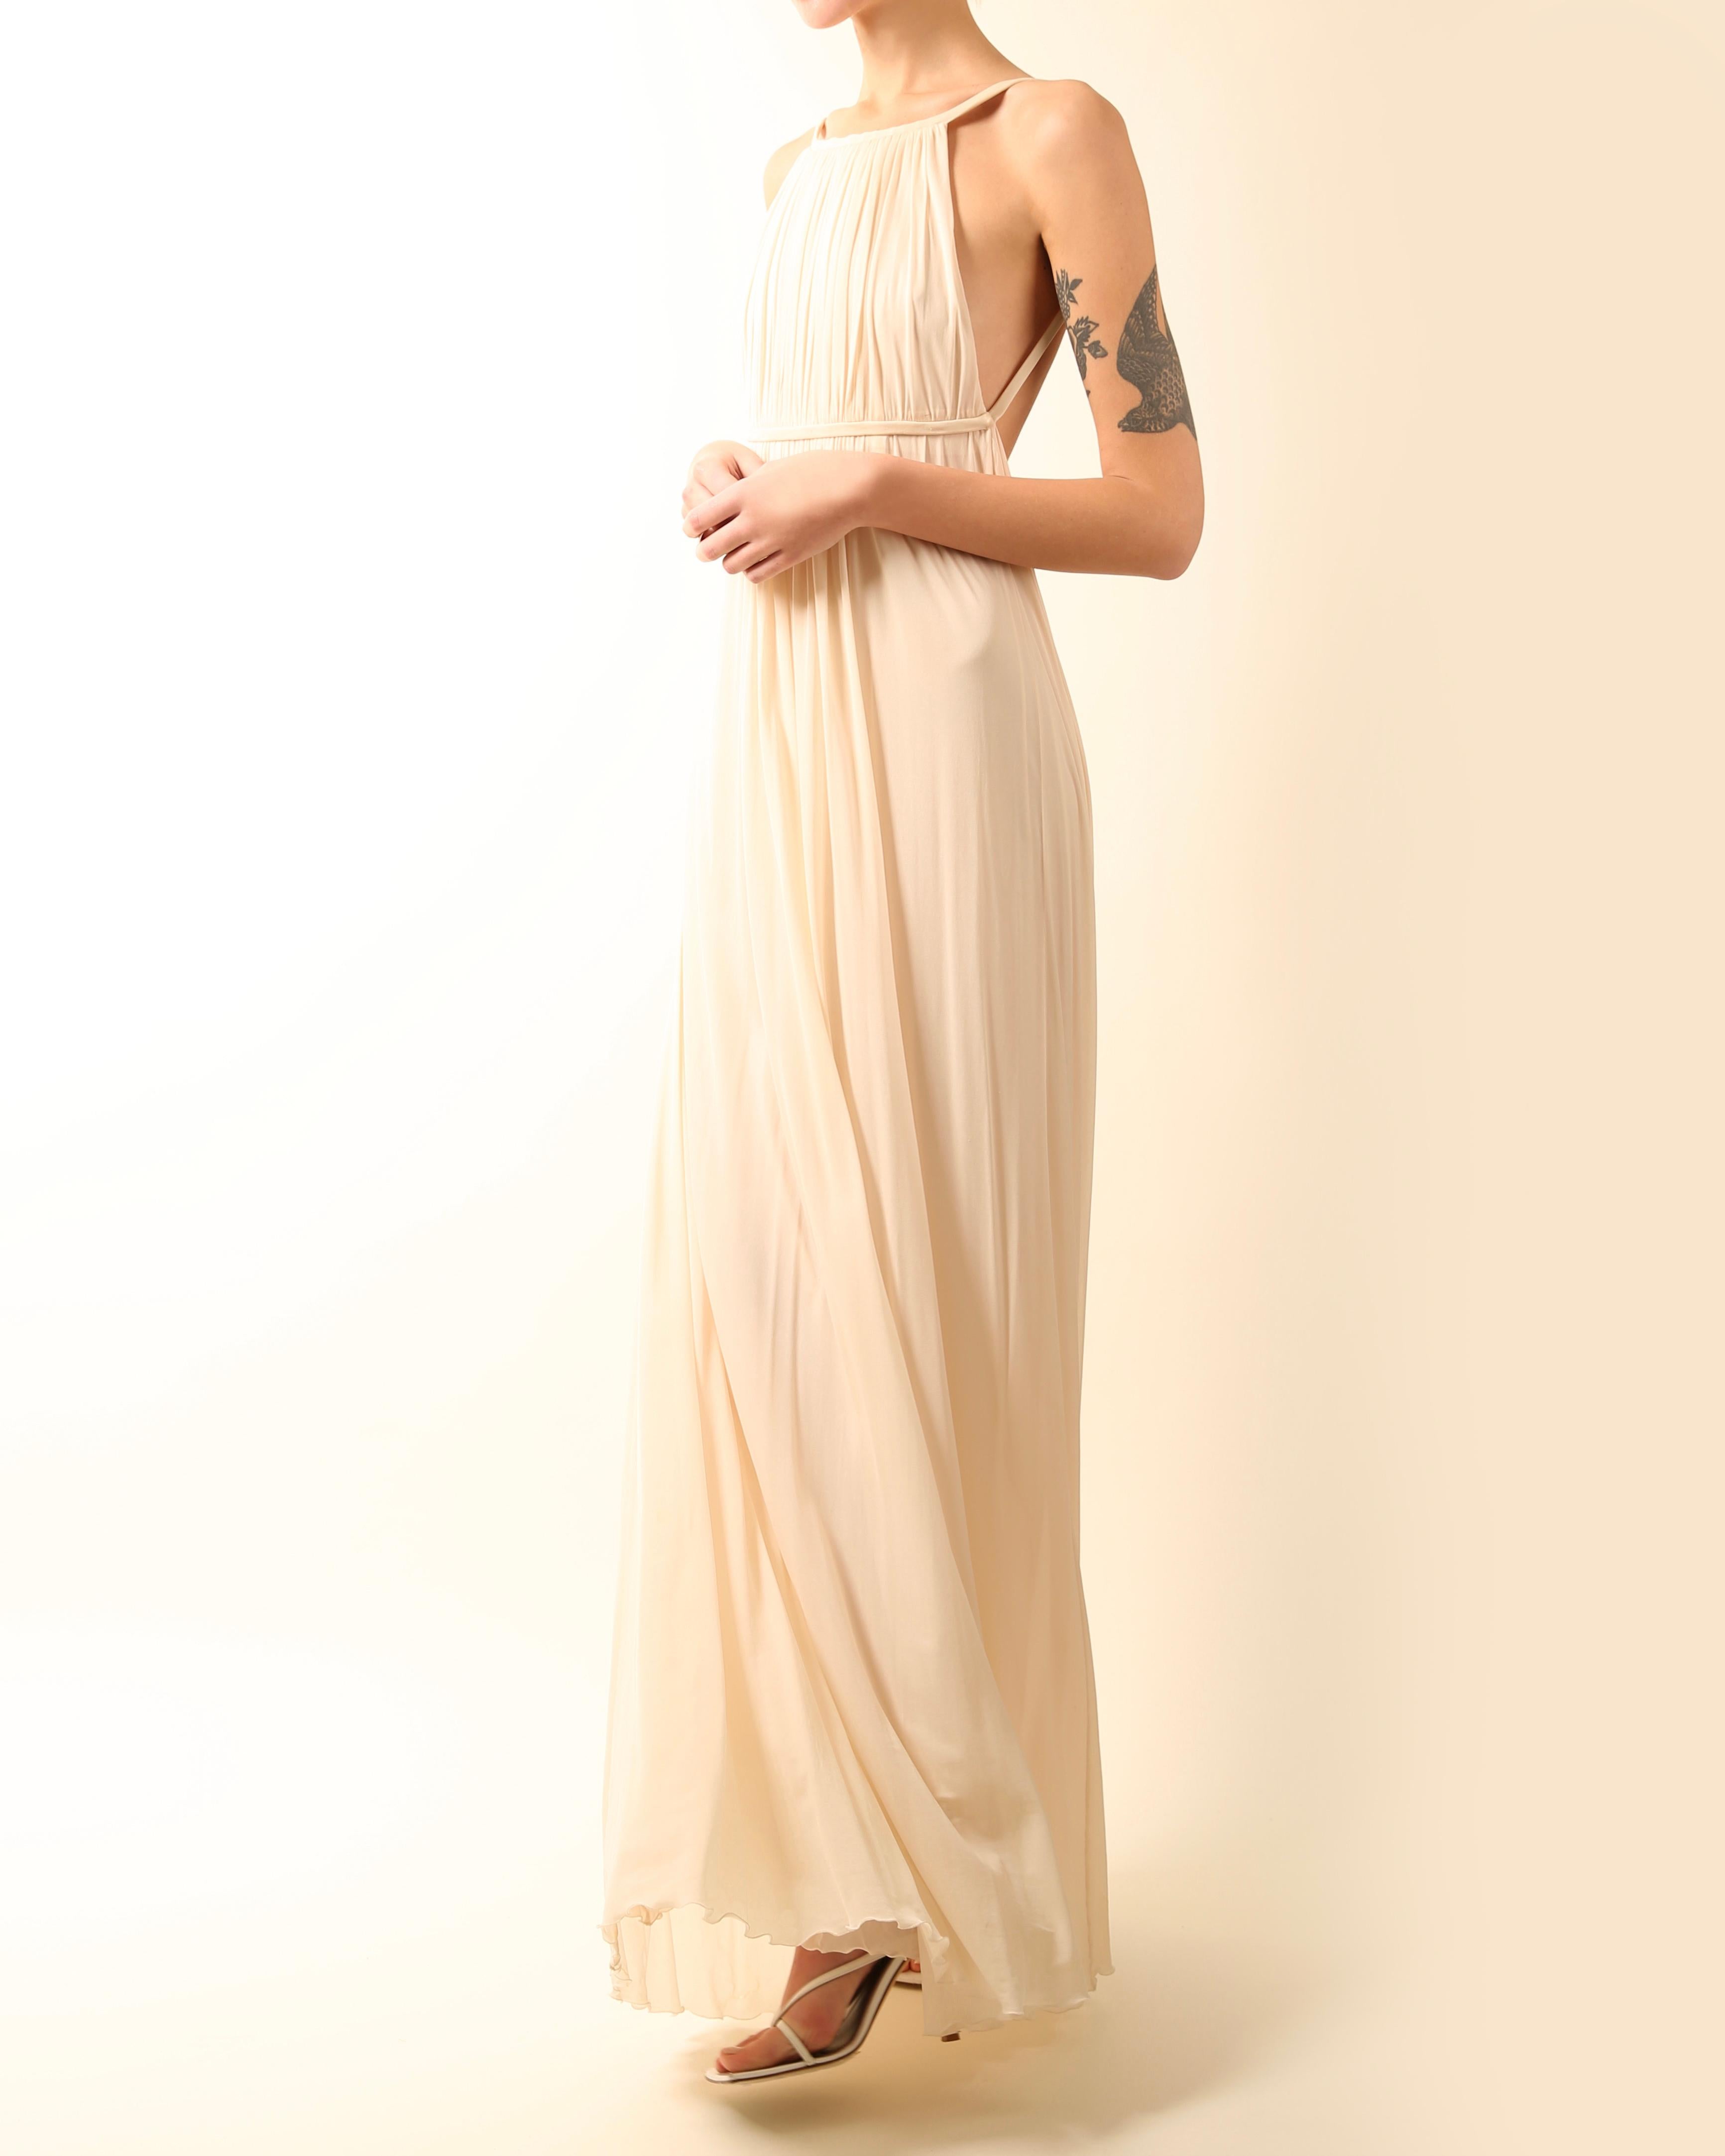 Robe de mariée longue dos nu Halston 09 plissée crème ivoire de style grec, taille 42 4